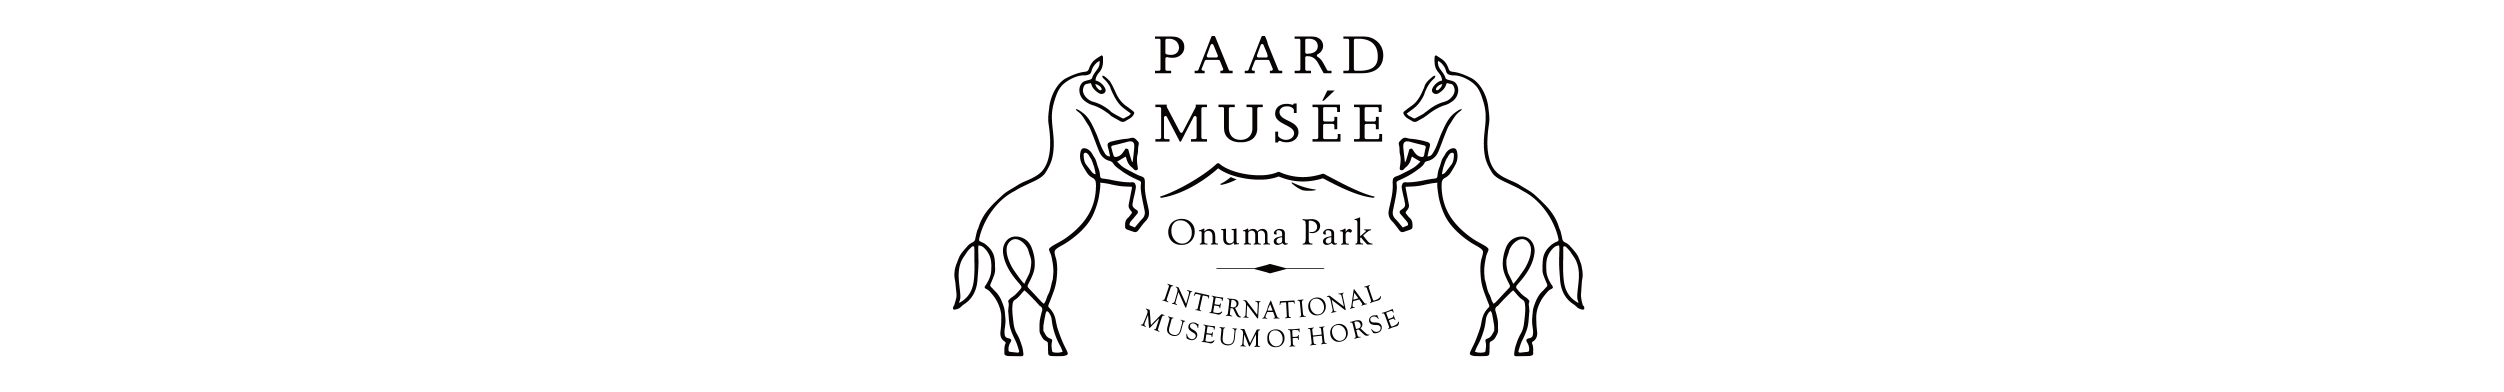 Paard Musée shop